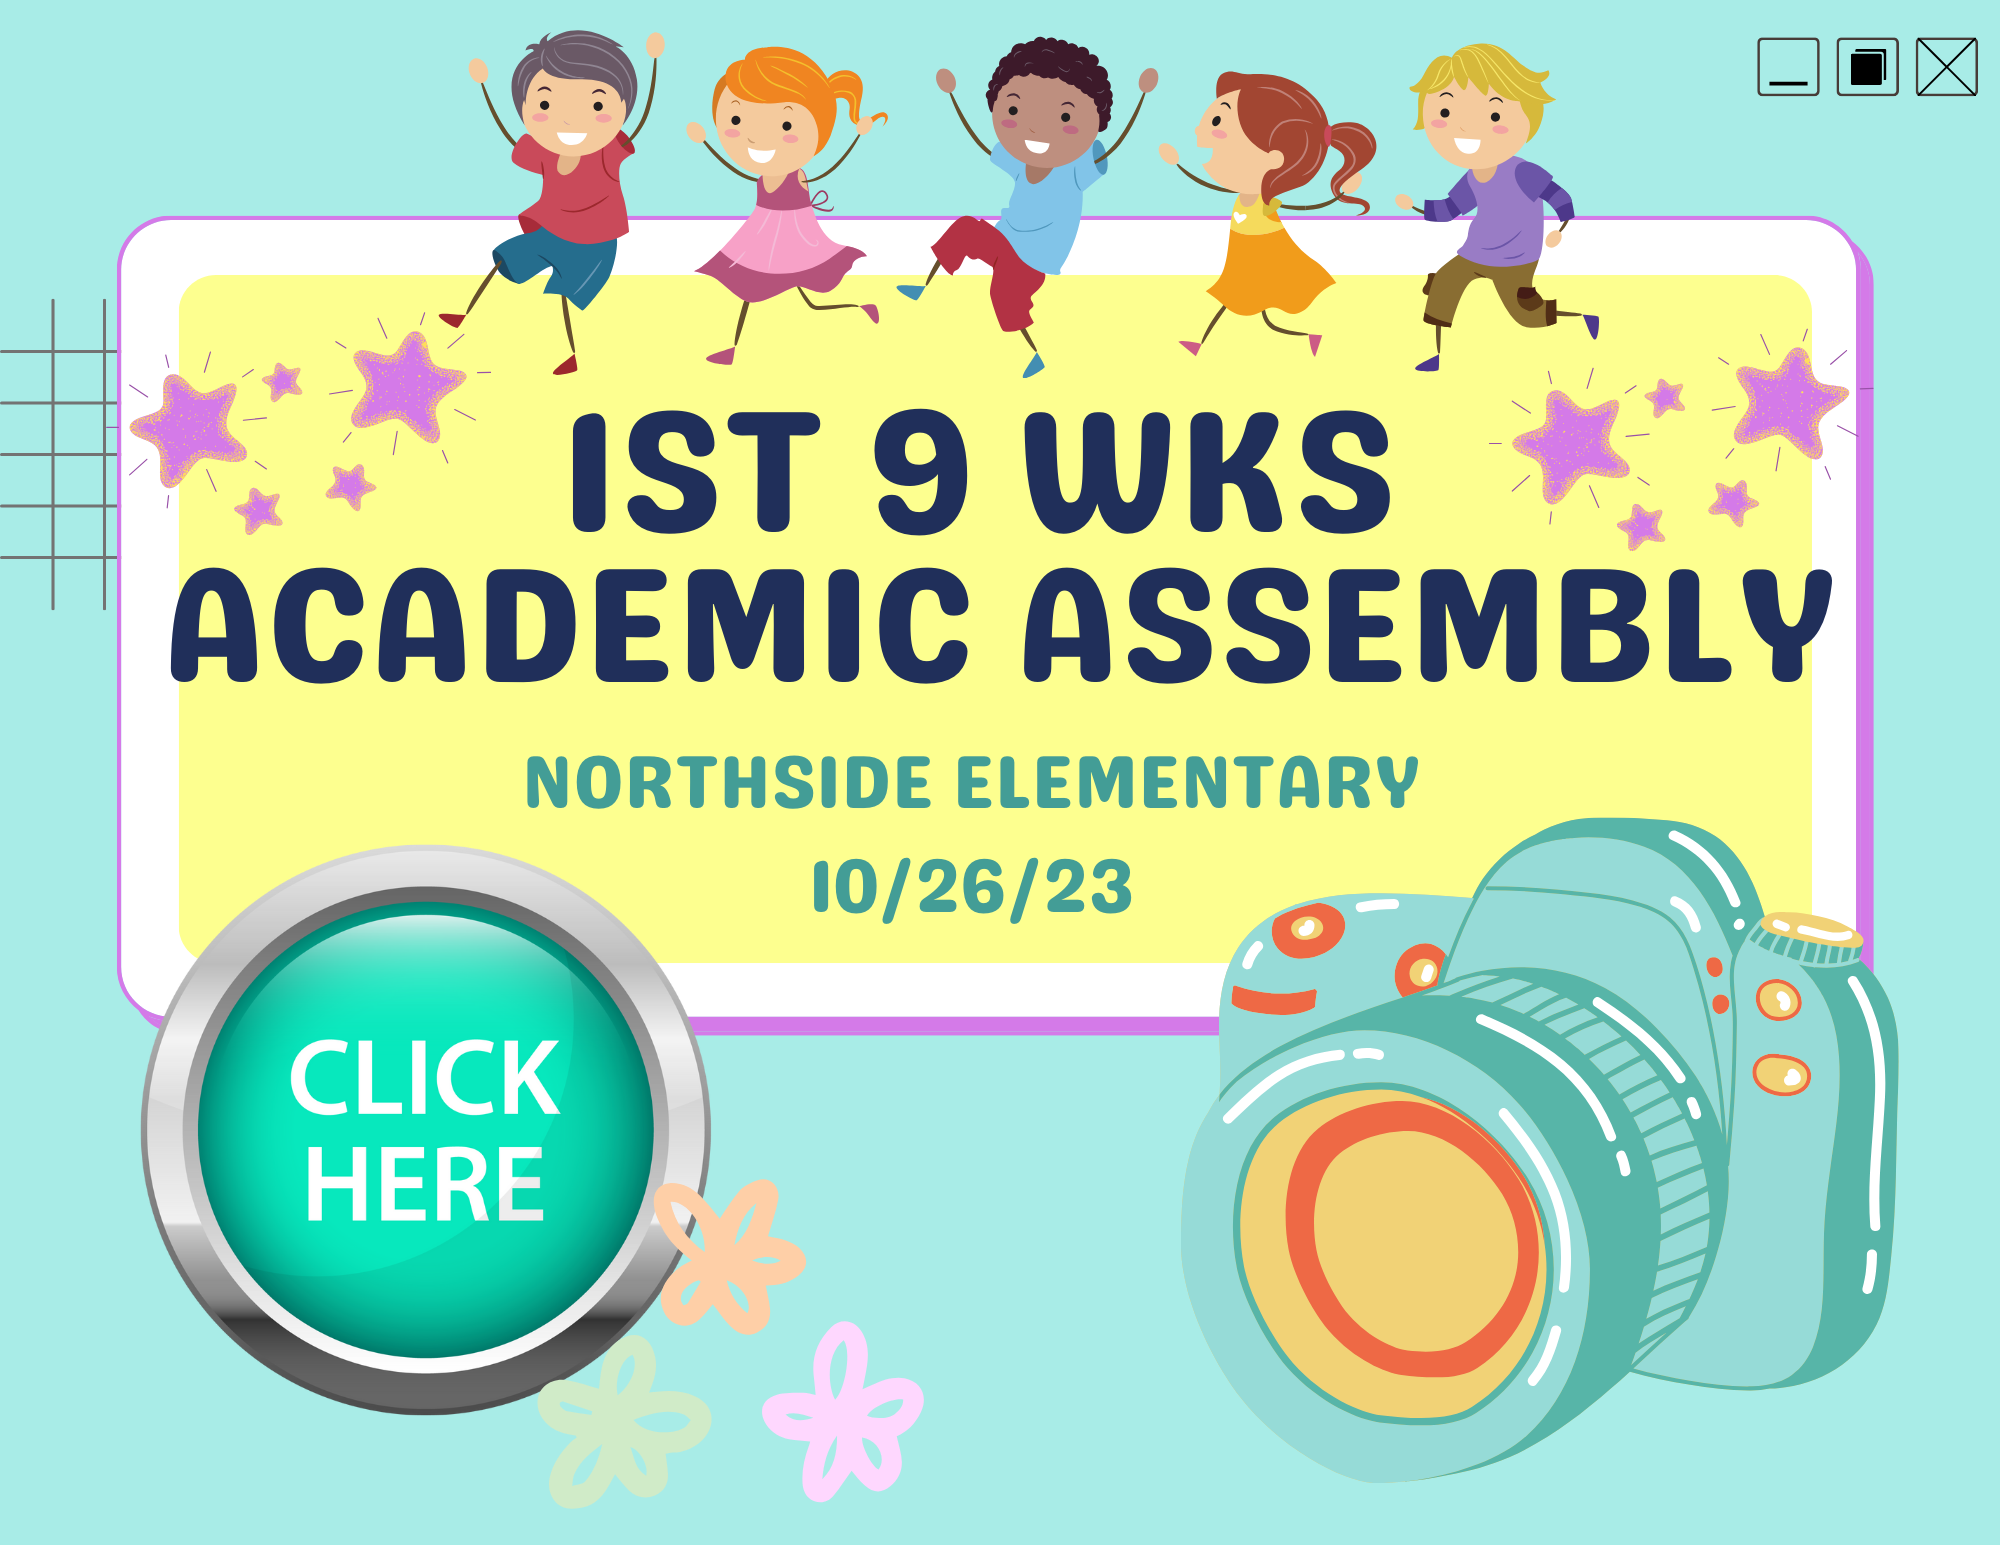 1st 9 wks Academic Assembly